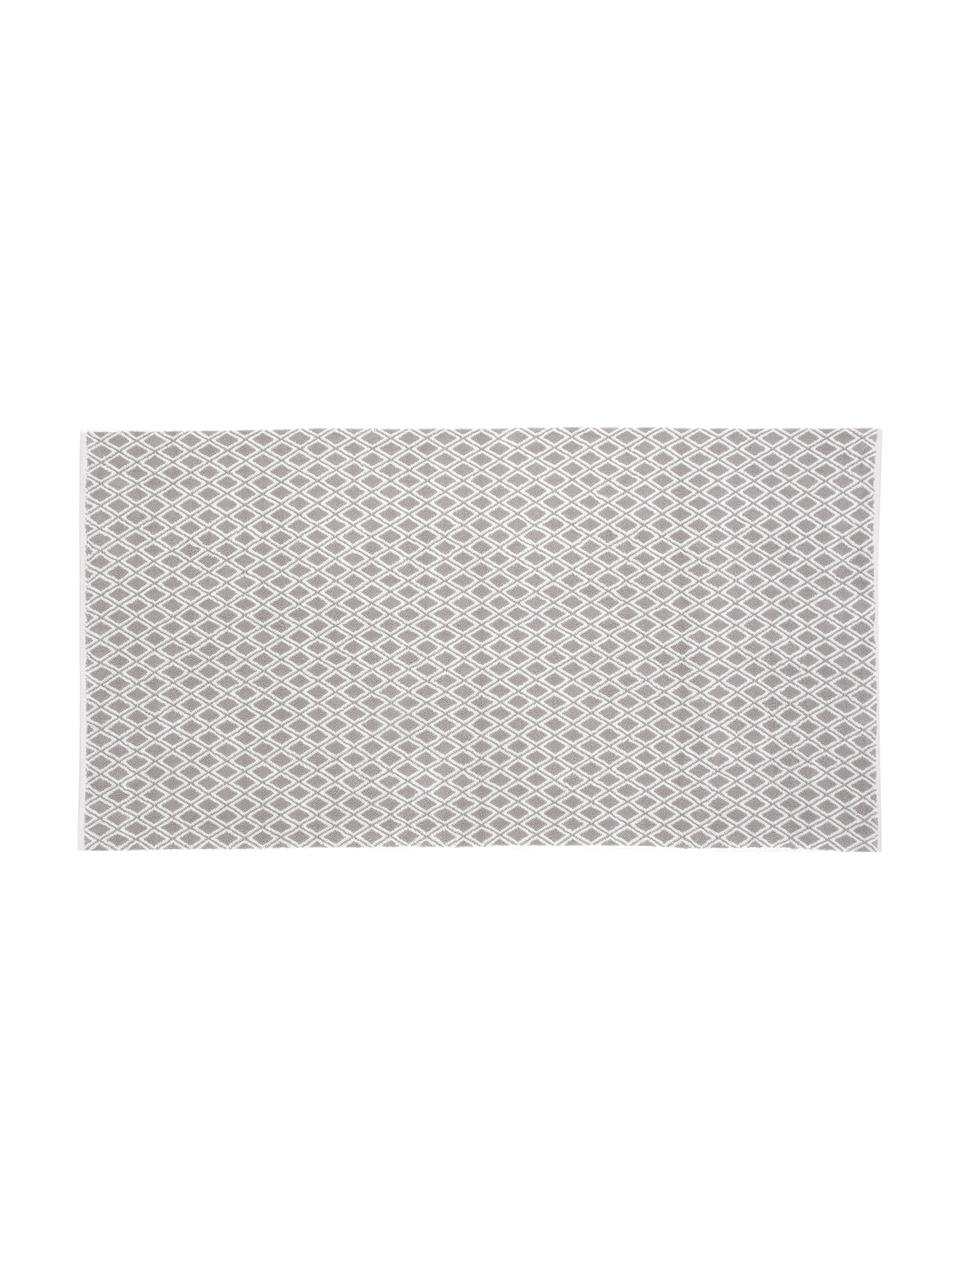 Wende-Handtuch Ava mit grafischem Muster, Taupe, Cremeweiß, Handtuch, B 50 x L 100 cm, 2 Stück